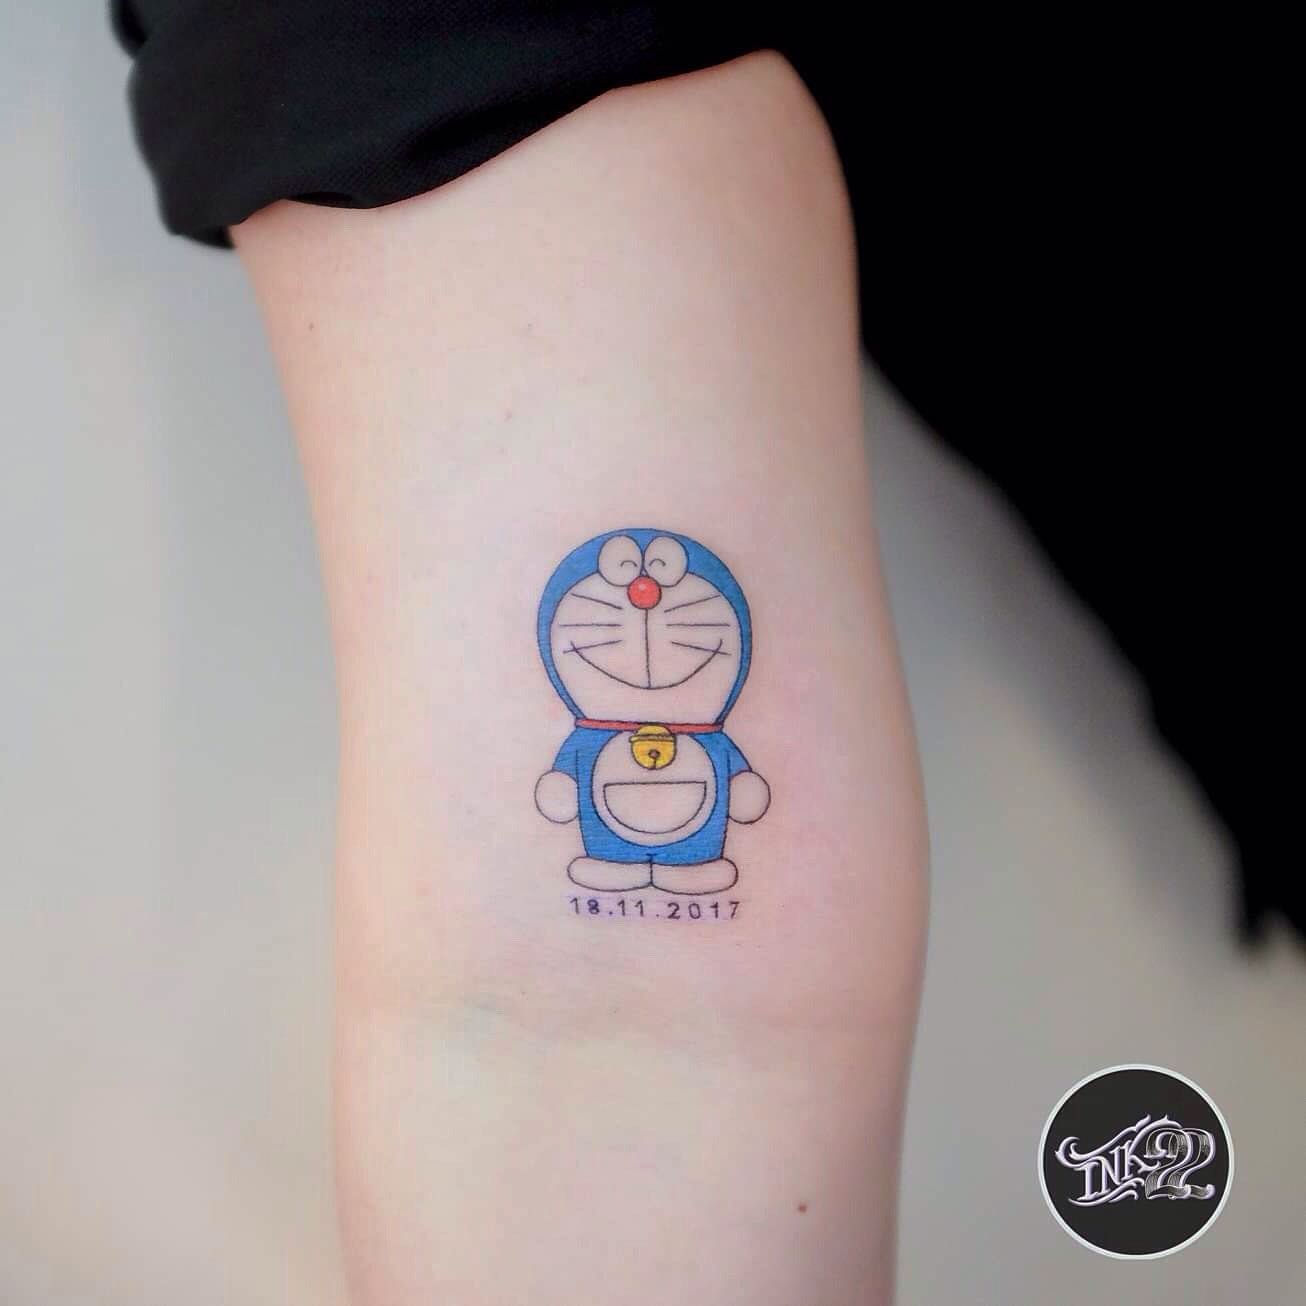 Doraemon deisgns for women by ink22.tattoo